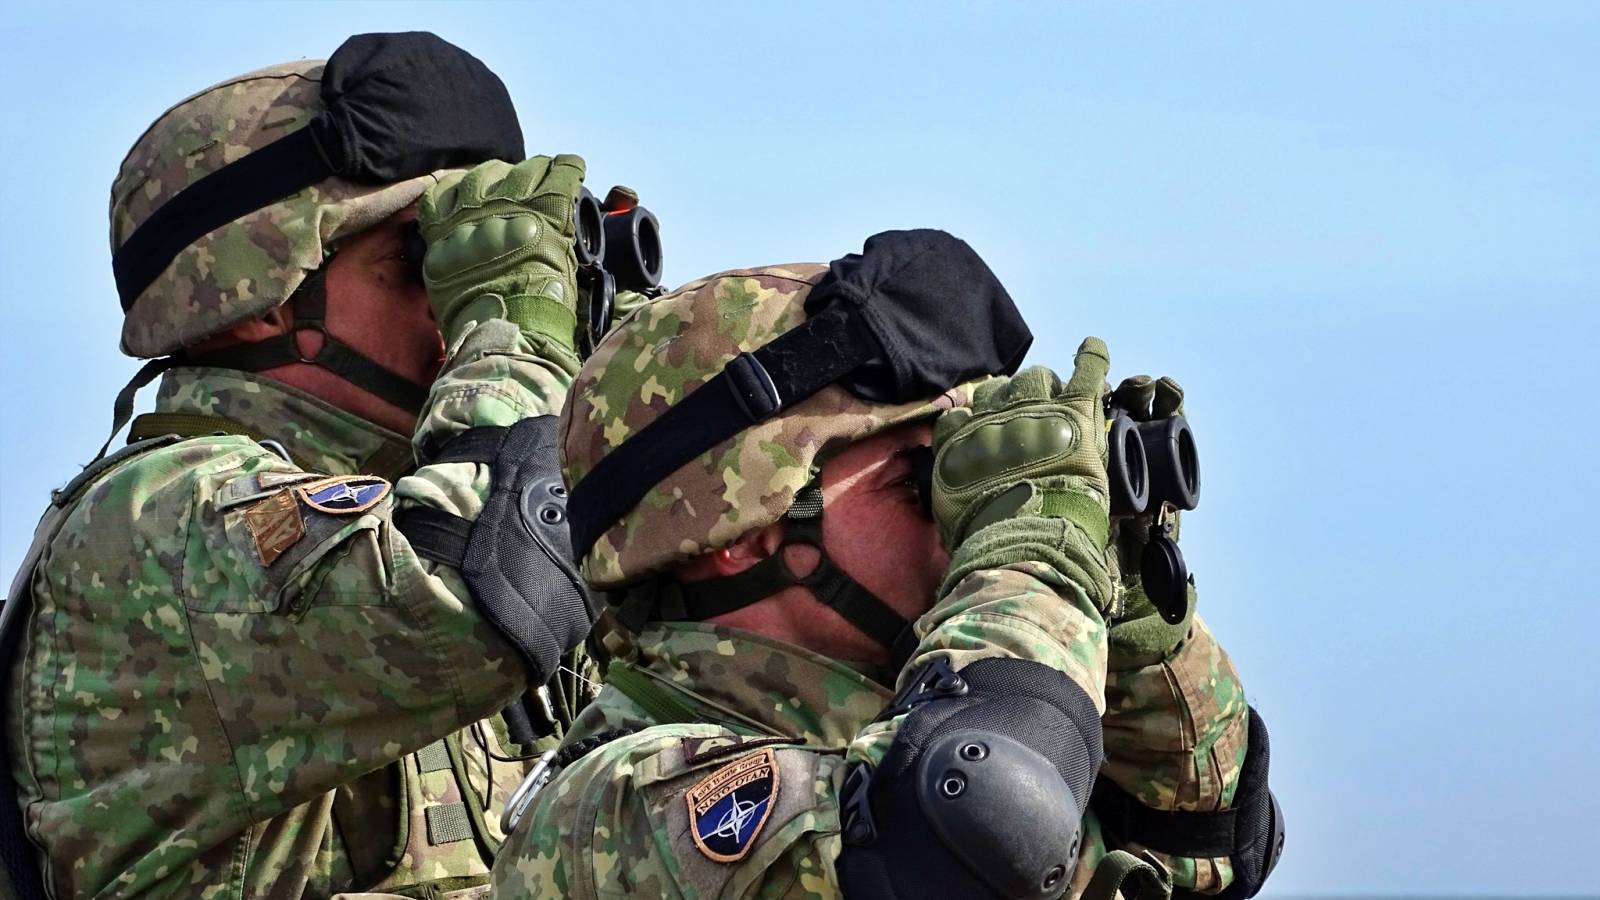 Ministerul Apararii Importante Actiuni Oficiale ULTIM MOMENT Derulat Multi Militari Romania